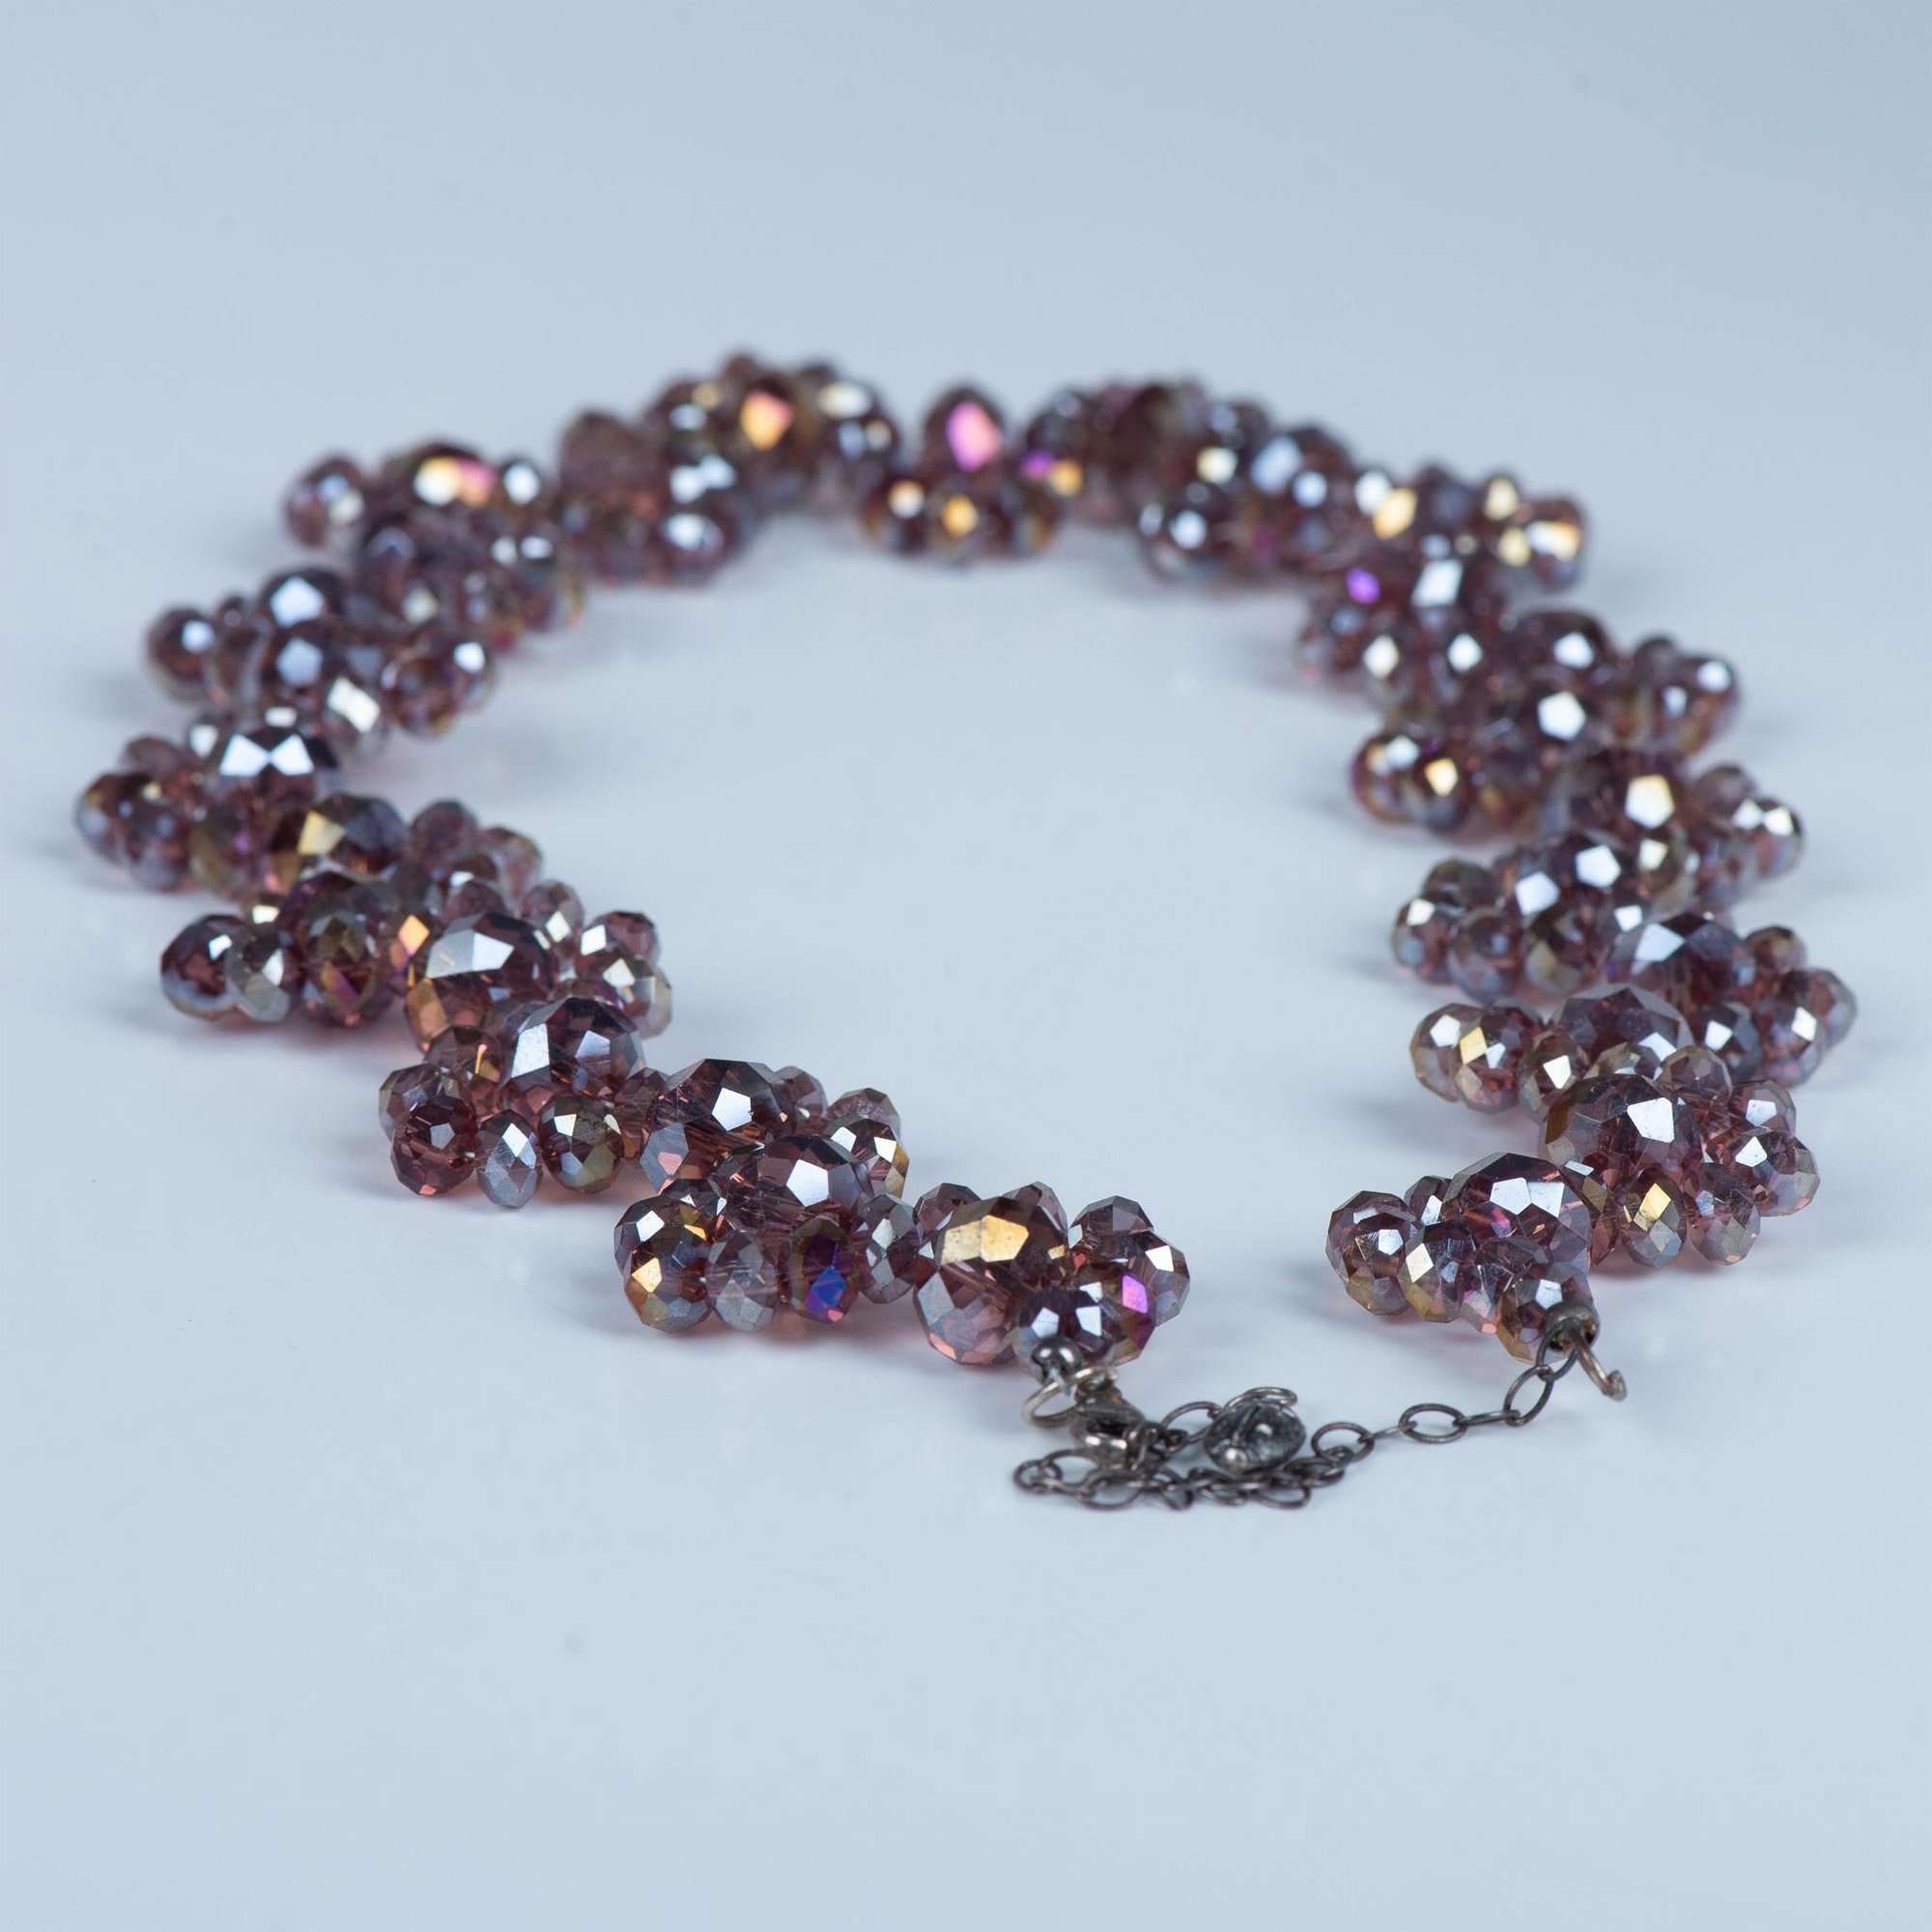 Beautiful Wavy Iridescent Purple Bead Choker Necklace - Image 3 of 4